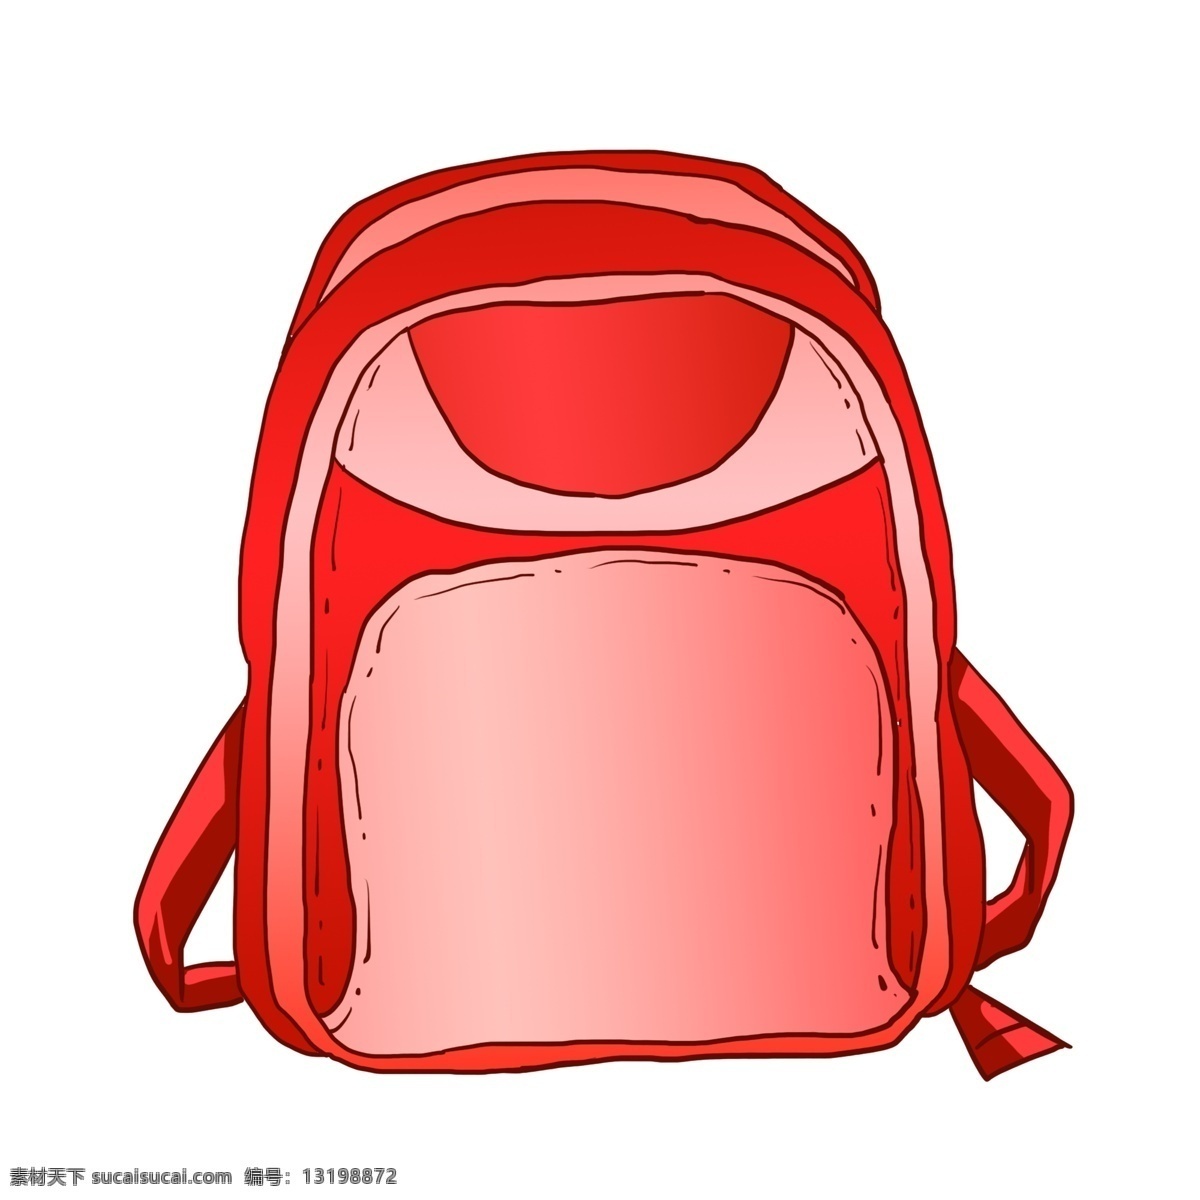 旅行 红色 背包 插画 生活用品 度假 旅游 书包 携带 收纳 游乐 游玩 游览 背部 背包插画 红色旅行背包